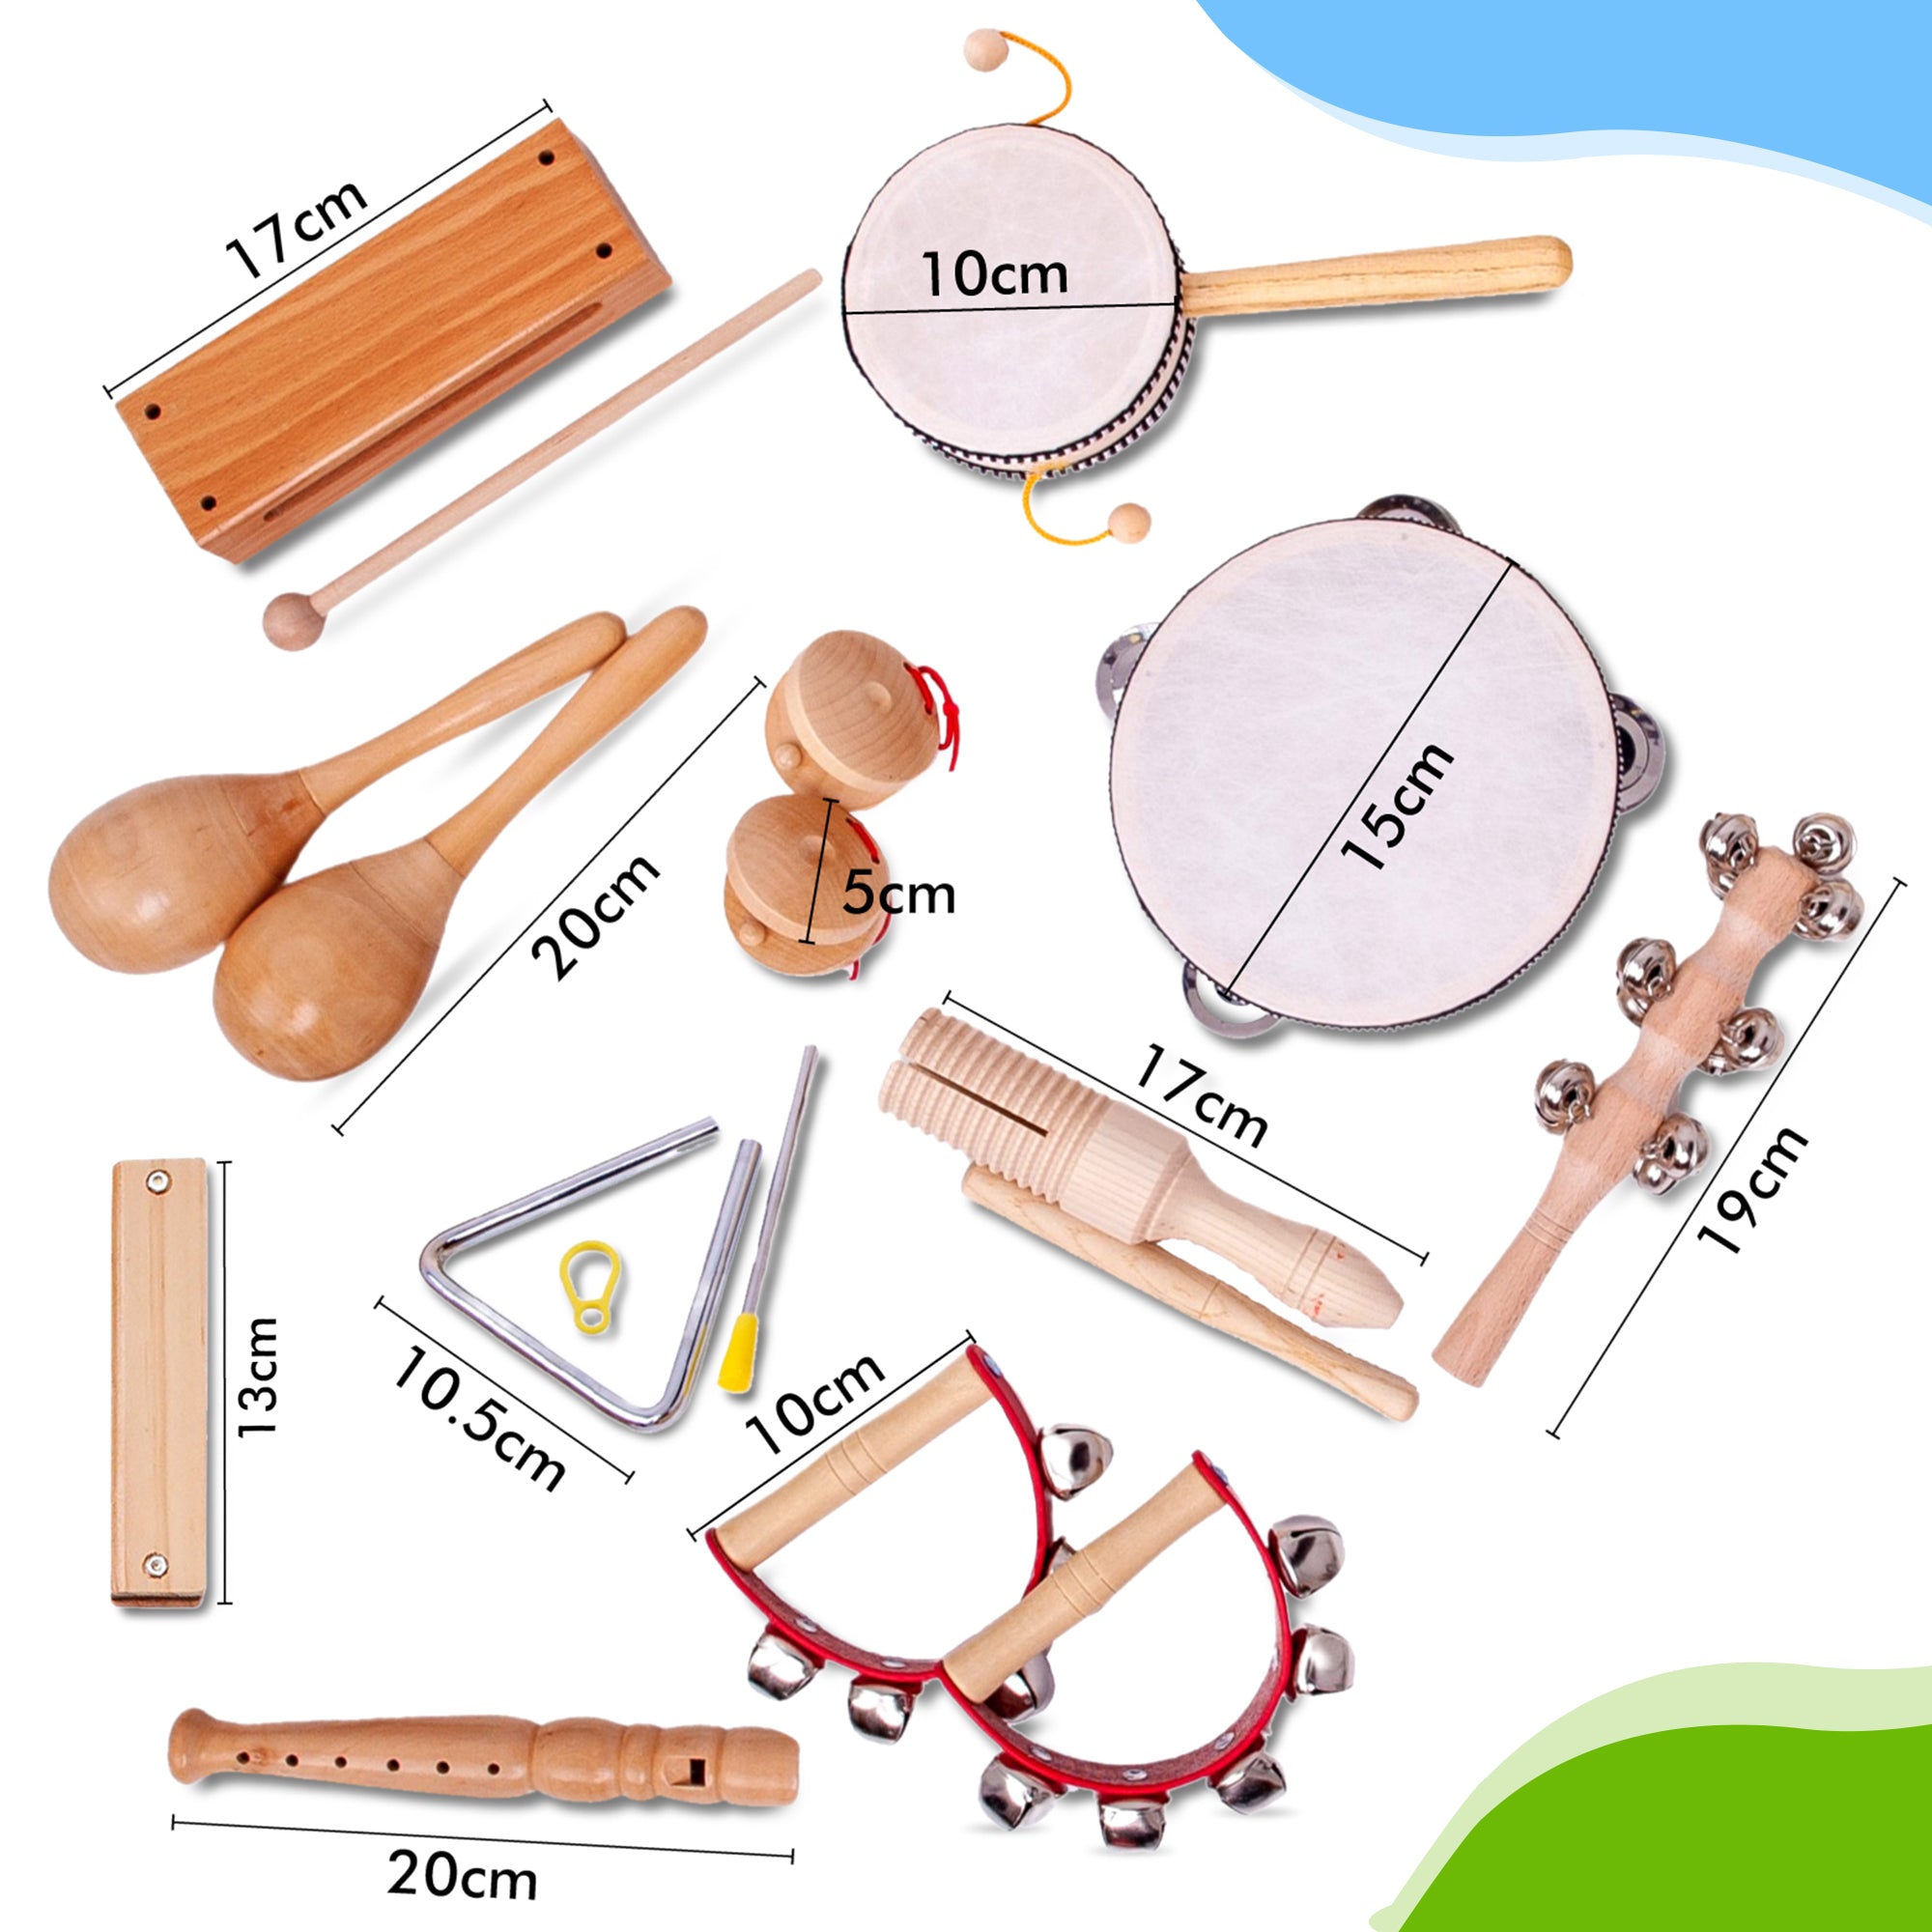 Są to wymiary drewnianych instrumentów zabawkowych, wykonanych specjalnie dla dzieci. Zamów je od razu i jutro zagraj na tym drewnianym flecie prostym lub harmonijce ustnej. Możesz wybrać swój własny instrument zabawkowy